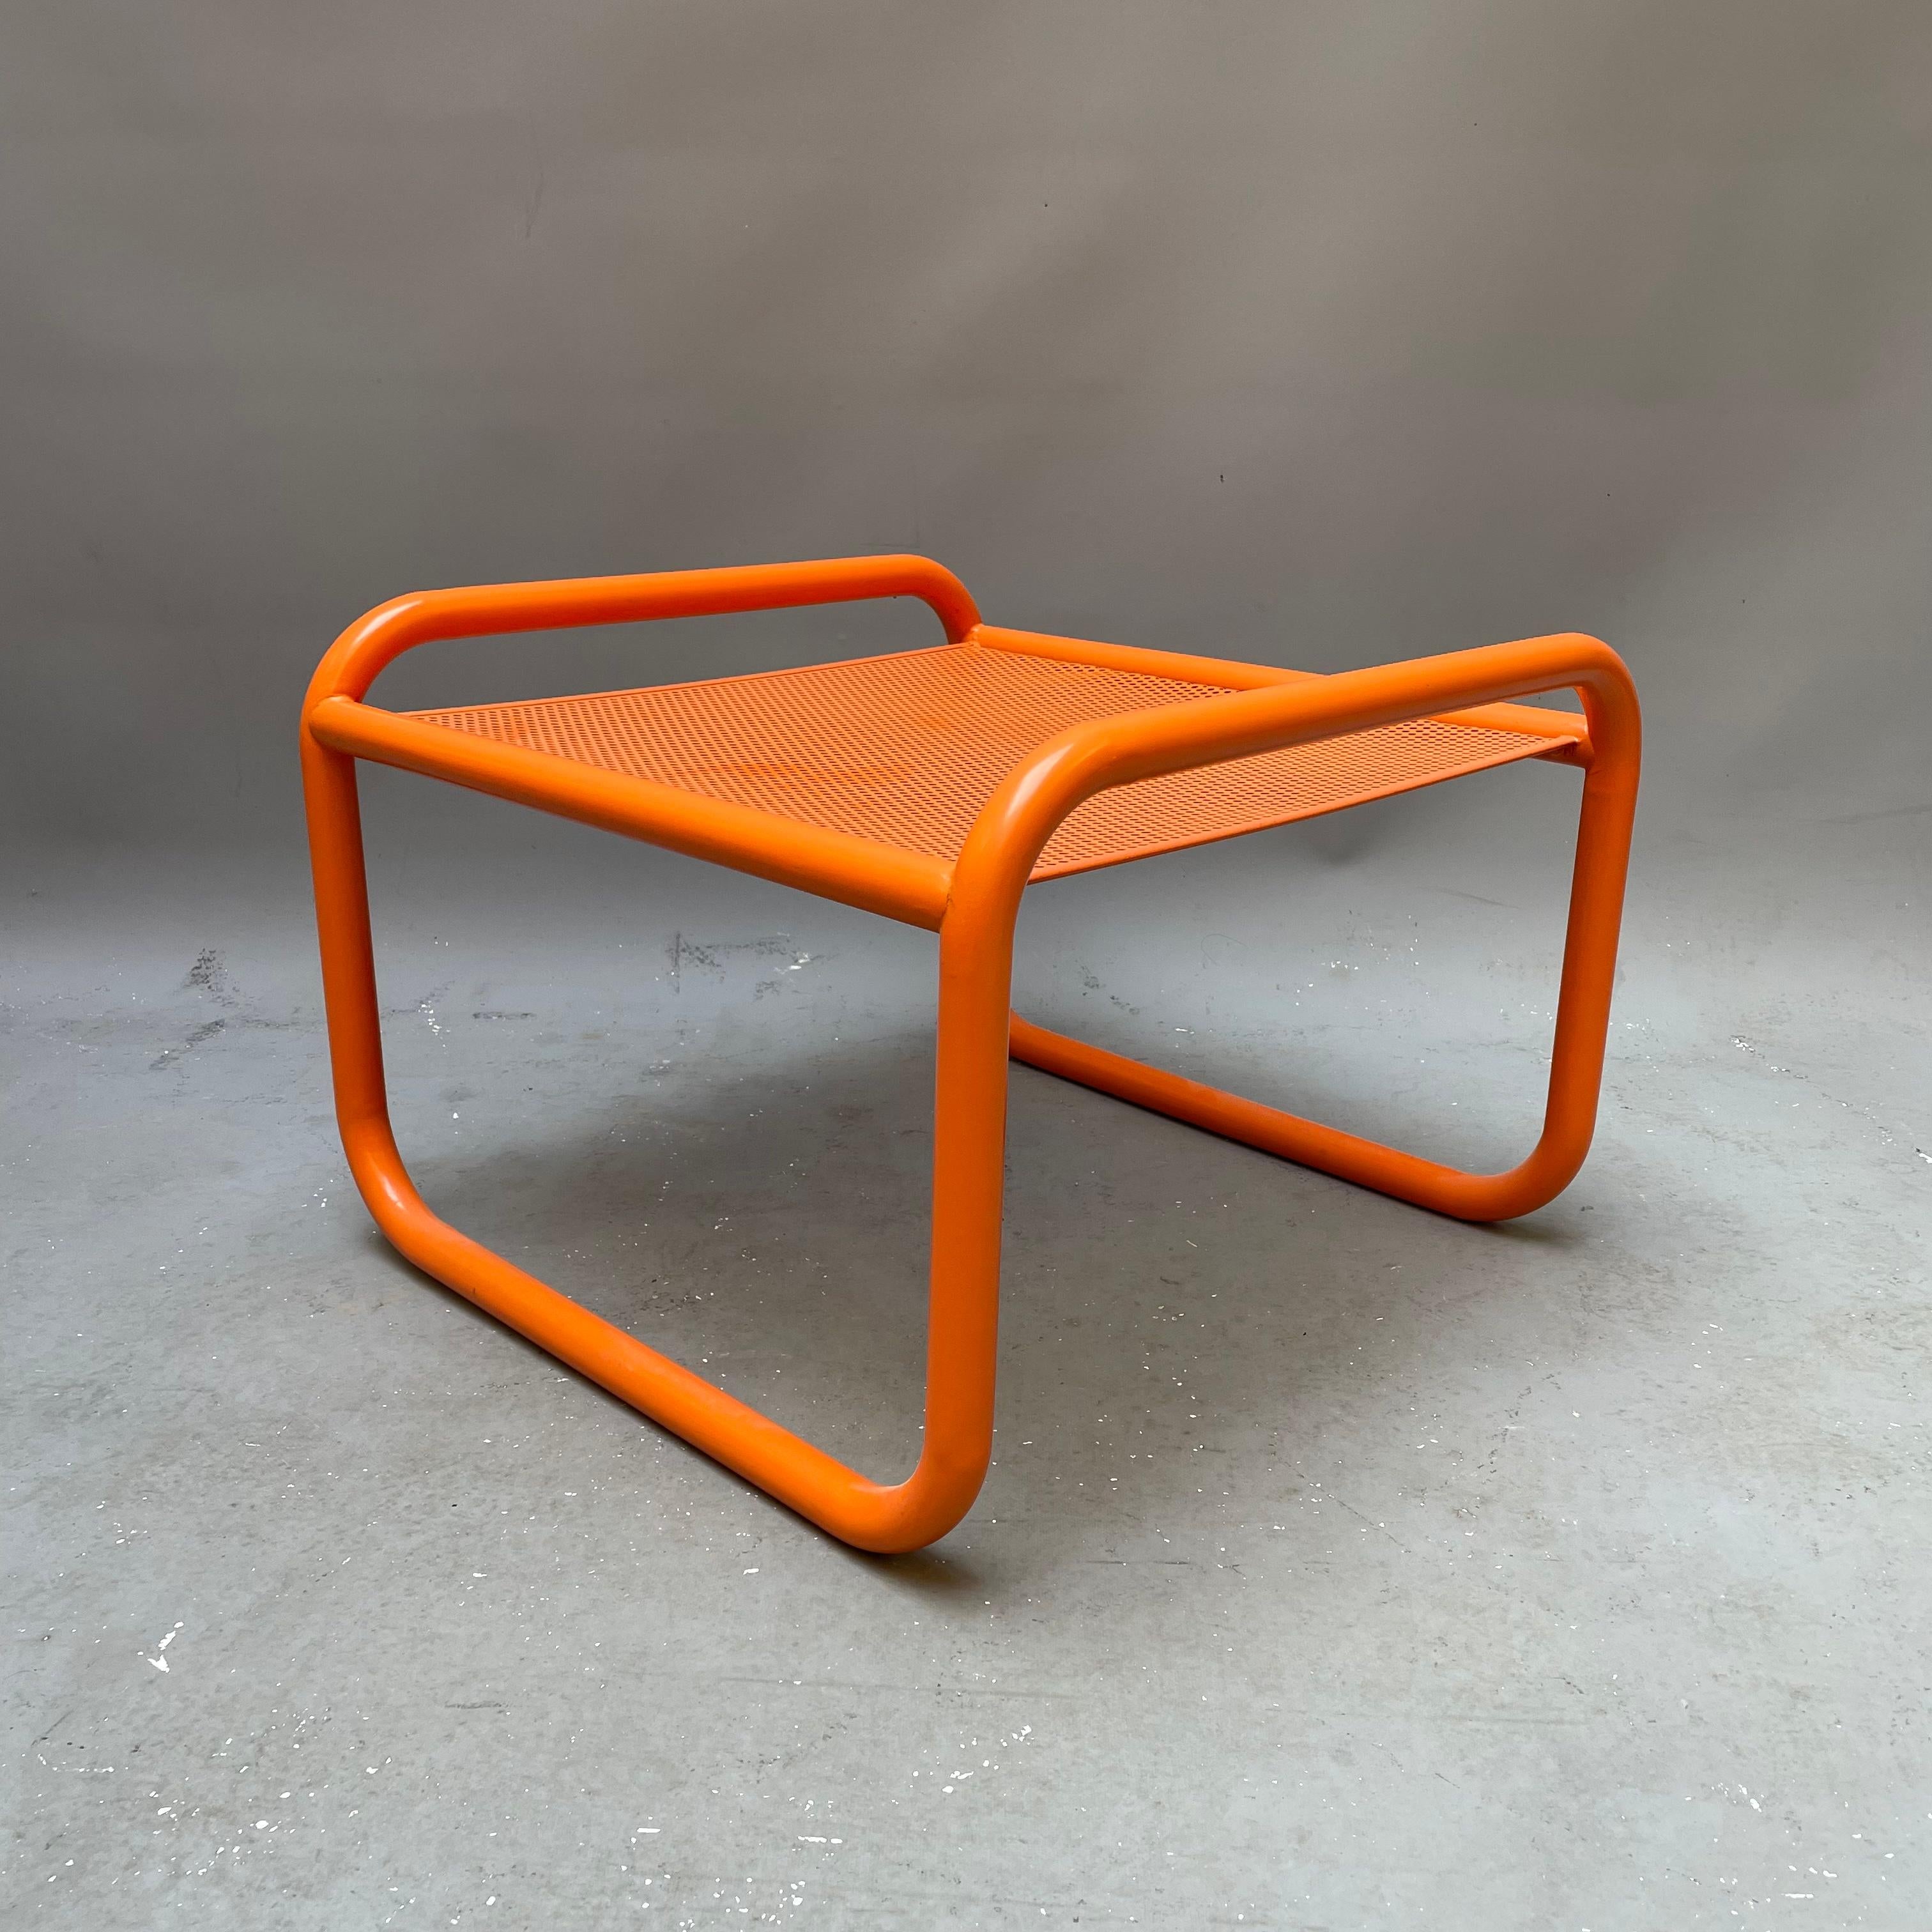 Locus Solus ist eine Kollektion aus Stahl und Stoffen mit originellen und neuartigen Mustern, die 1964 von Gae Aulenti mit unvorhersehbarem Flair entworfen wurde. Das Gestell des Locus Solus Chair ist aus lackiertem Edelstahlrohr gefertigt. Die